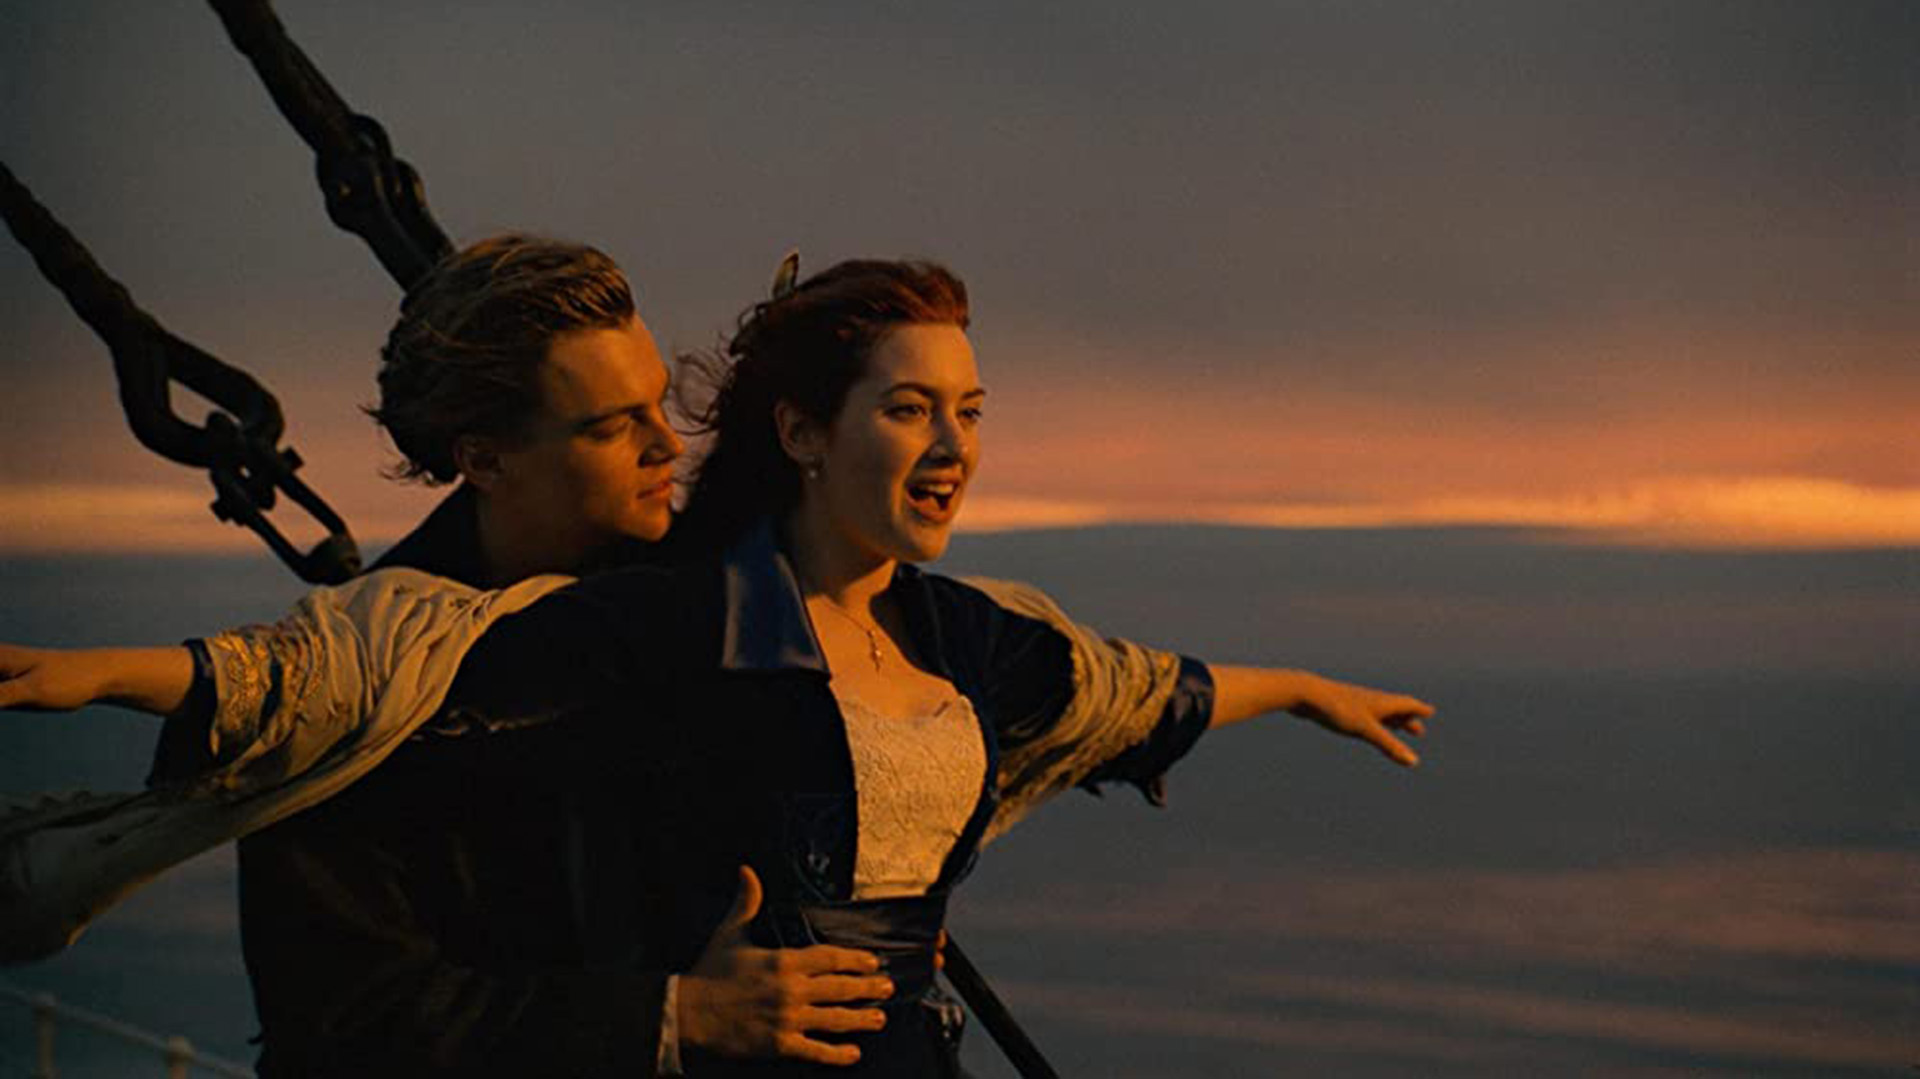 Además del tema principal, esta escena de "Titanic" es considerada una de las más famosas del cine
(The Grosby Group)